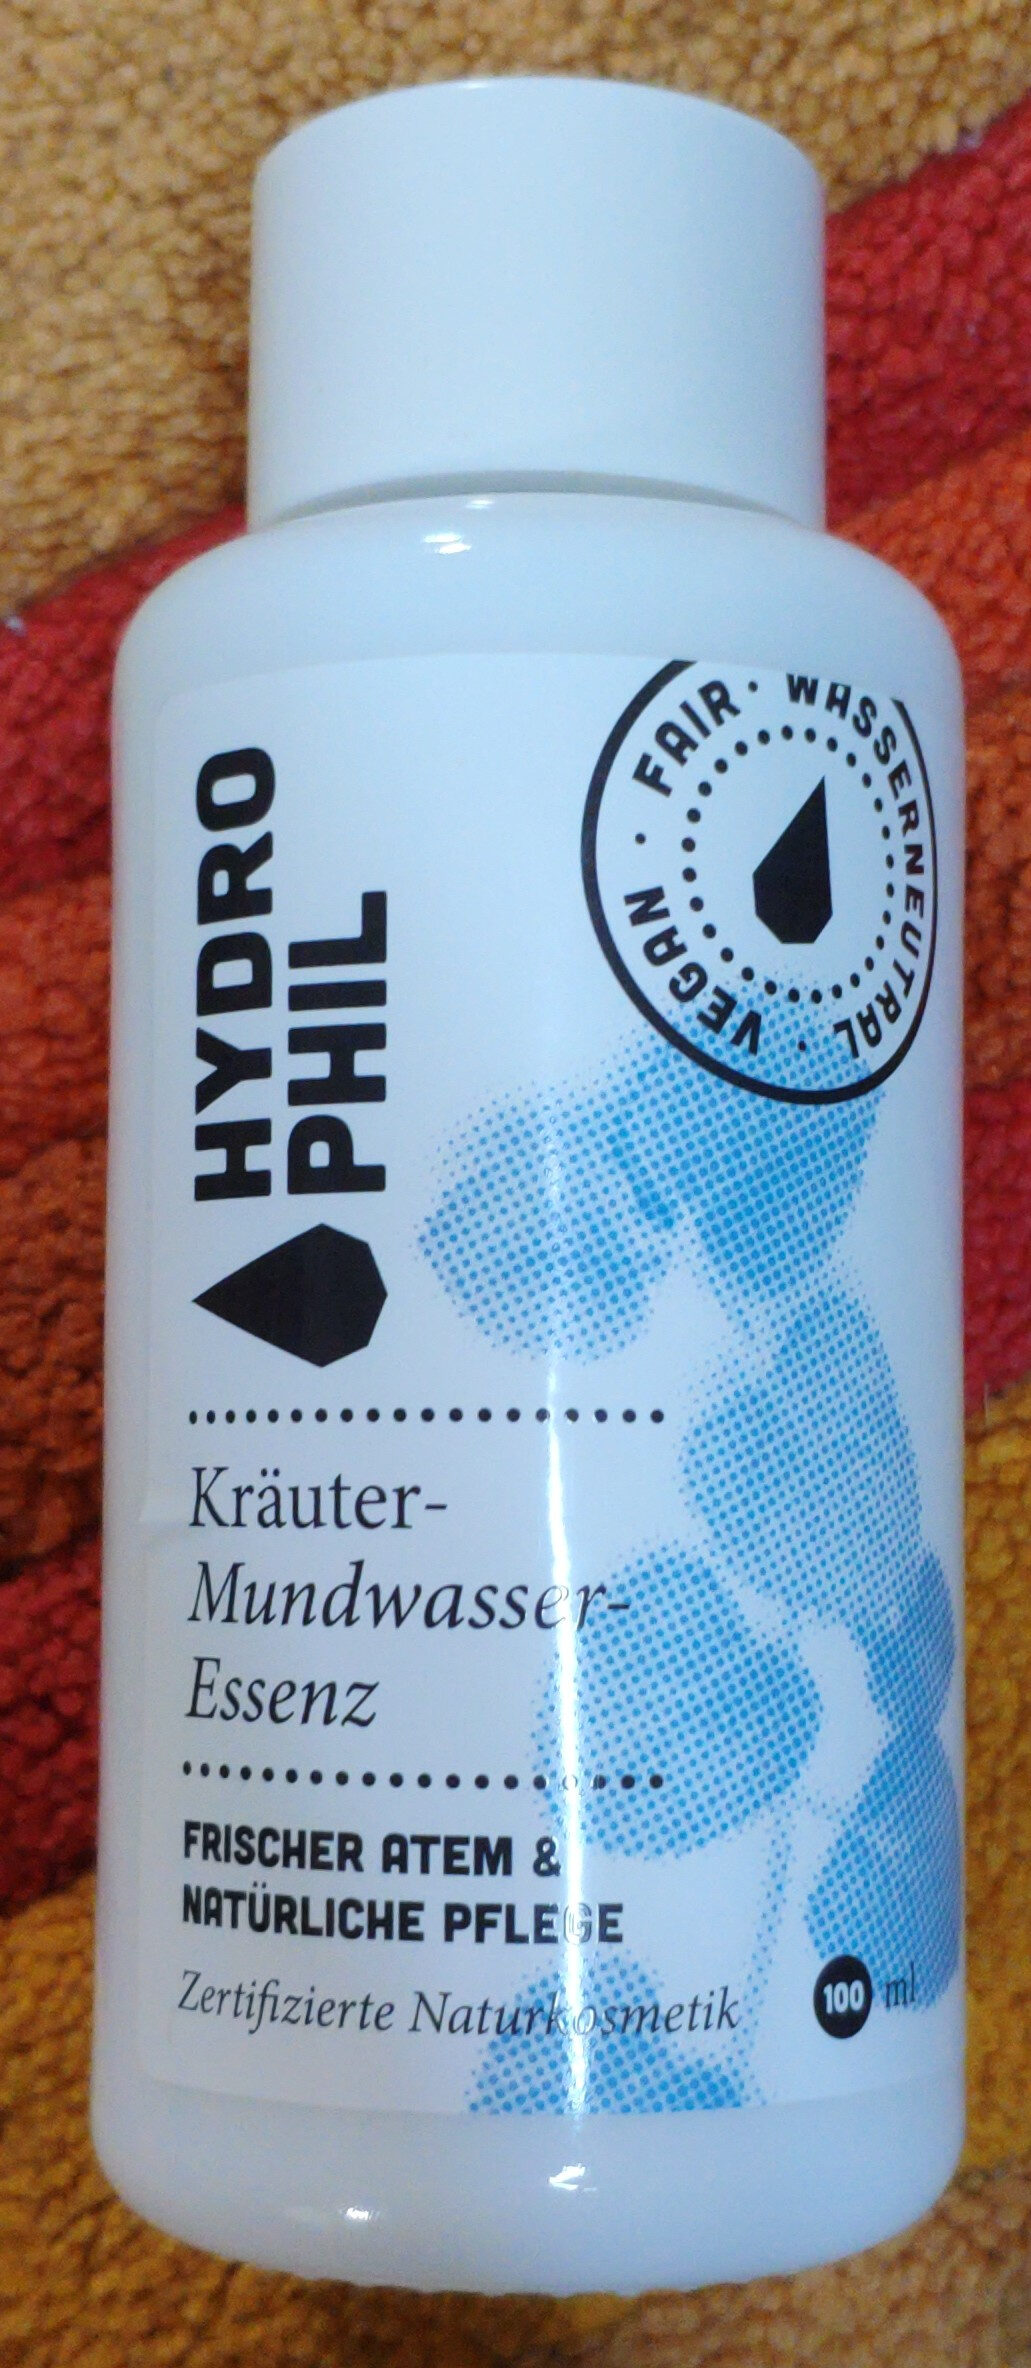 Kräuter-Mundwasser-Essenz - Product - en